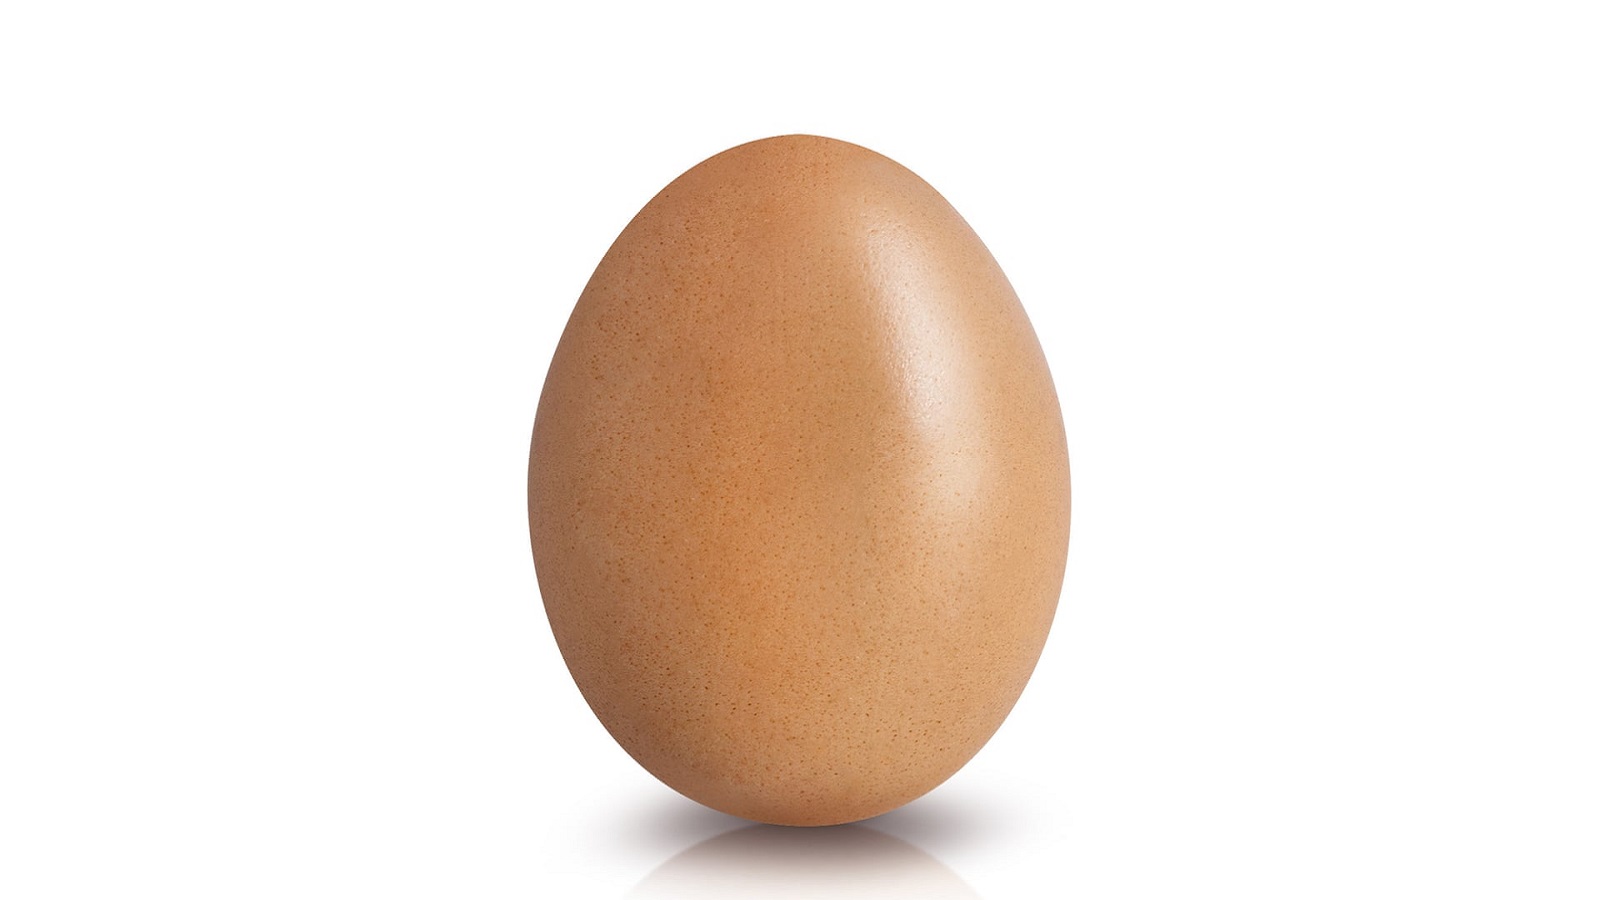 البيضة التي قصمت ظَهر "انستغرام"